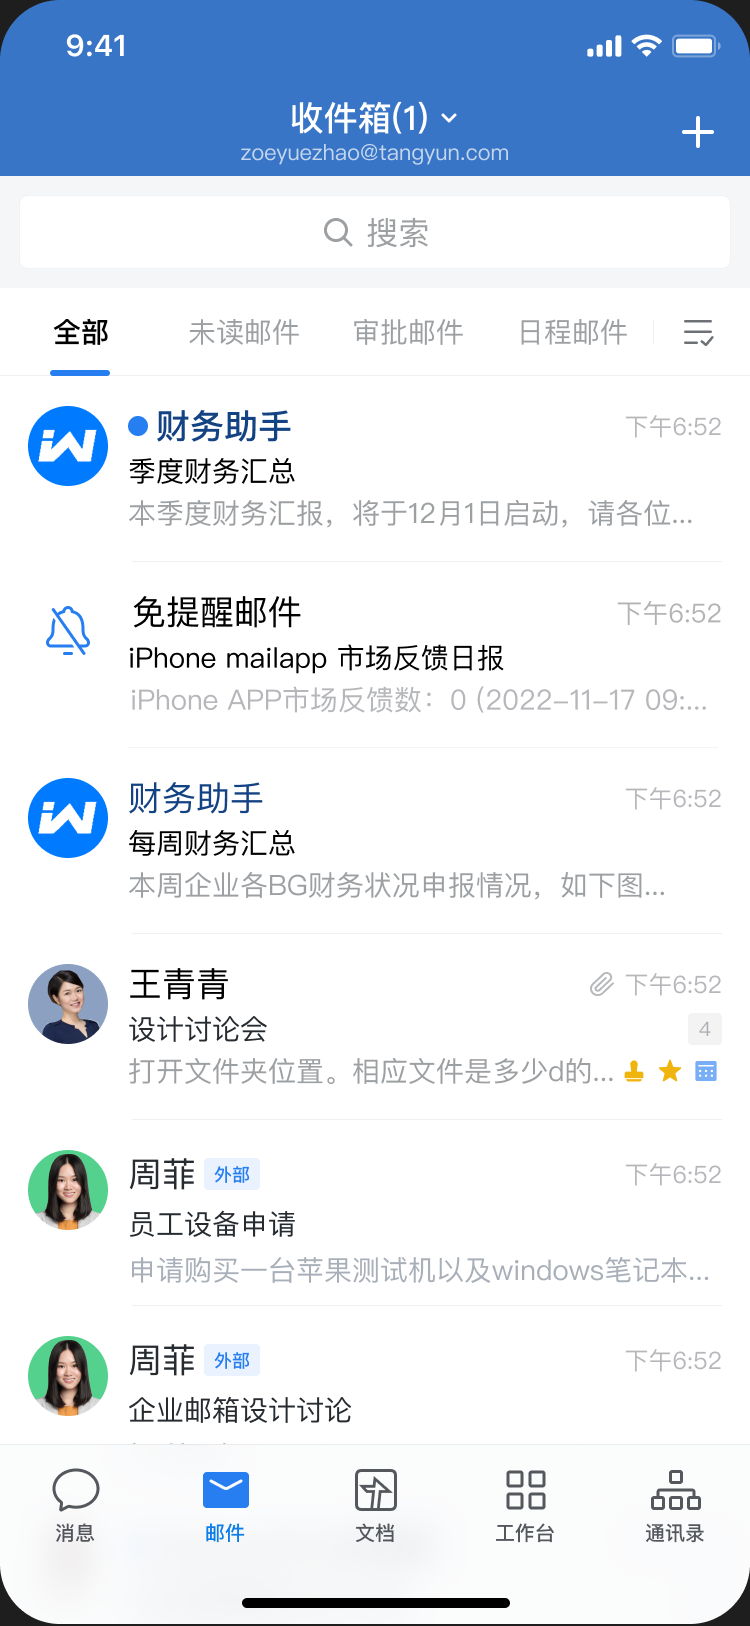 騰訊企業微信郵箱